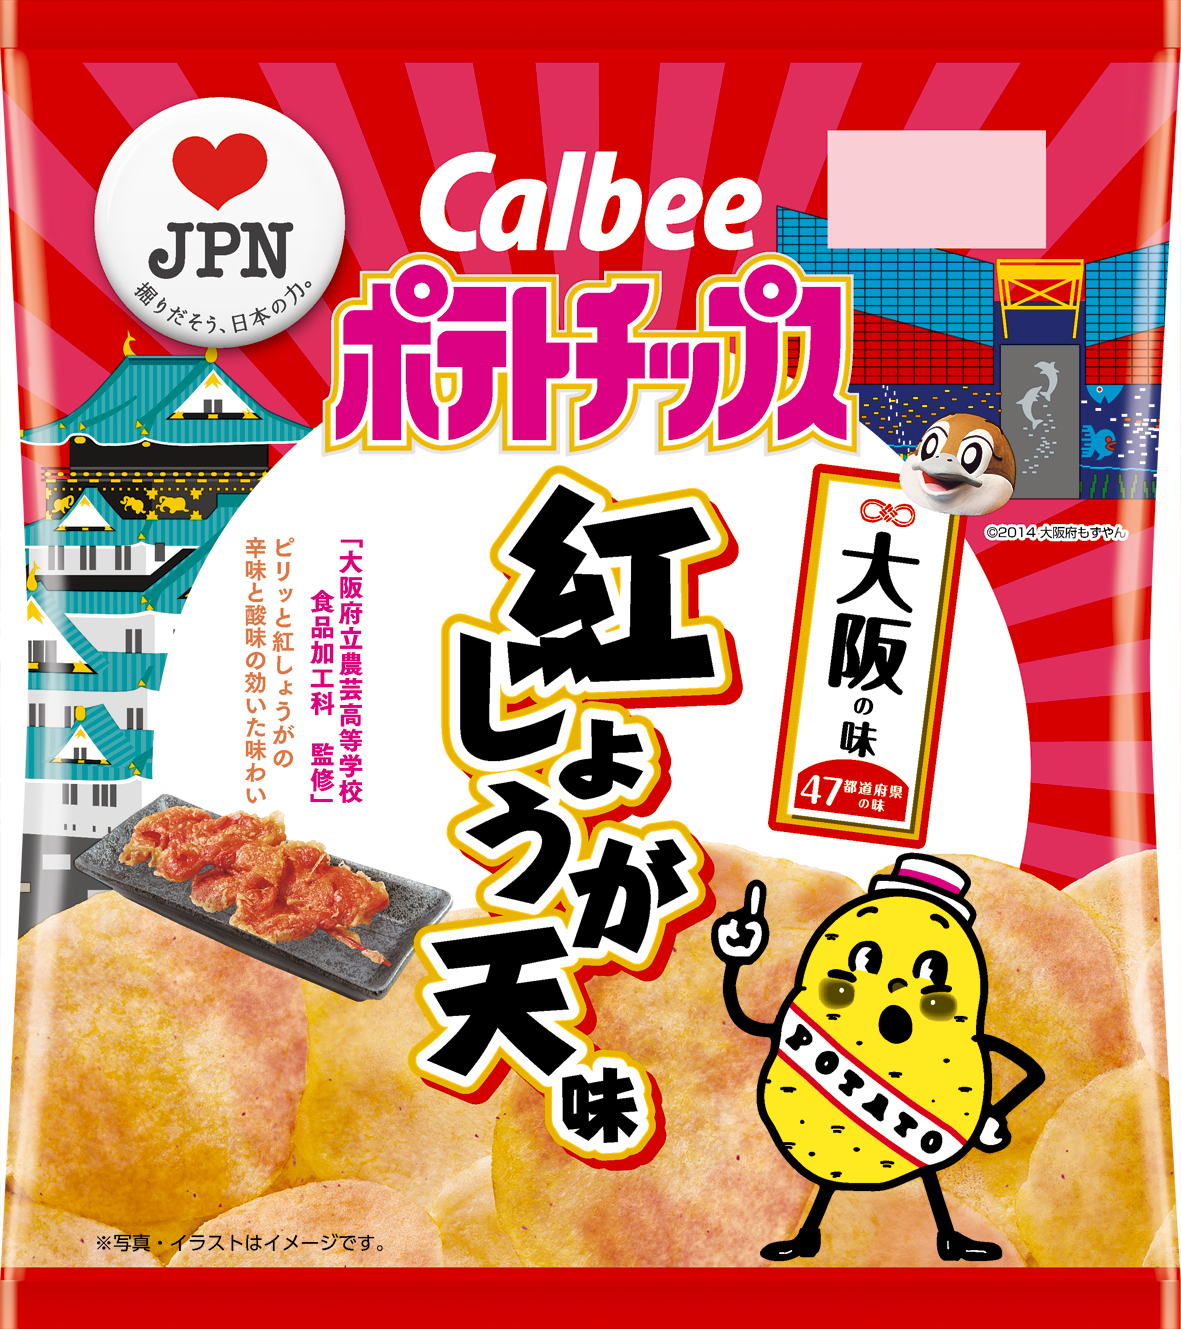 47都道府県の 地元ならではの味 をポテトチップスで再現 大阪の味 ポテトチップス 紅しょうが 天味 1月21日 月 発売 カルビー株式会社のプレスリリース